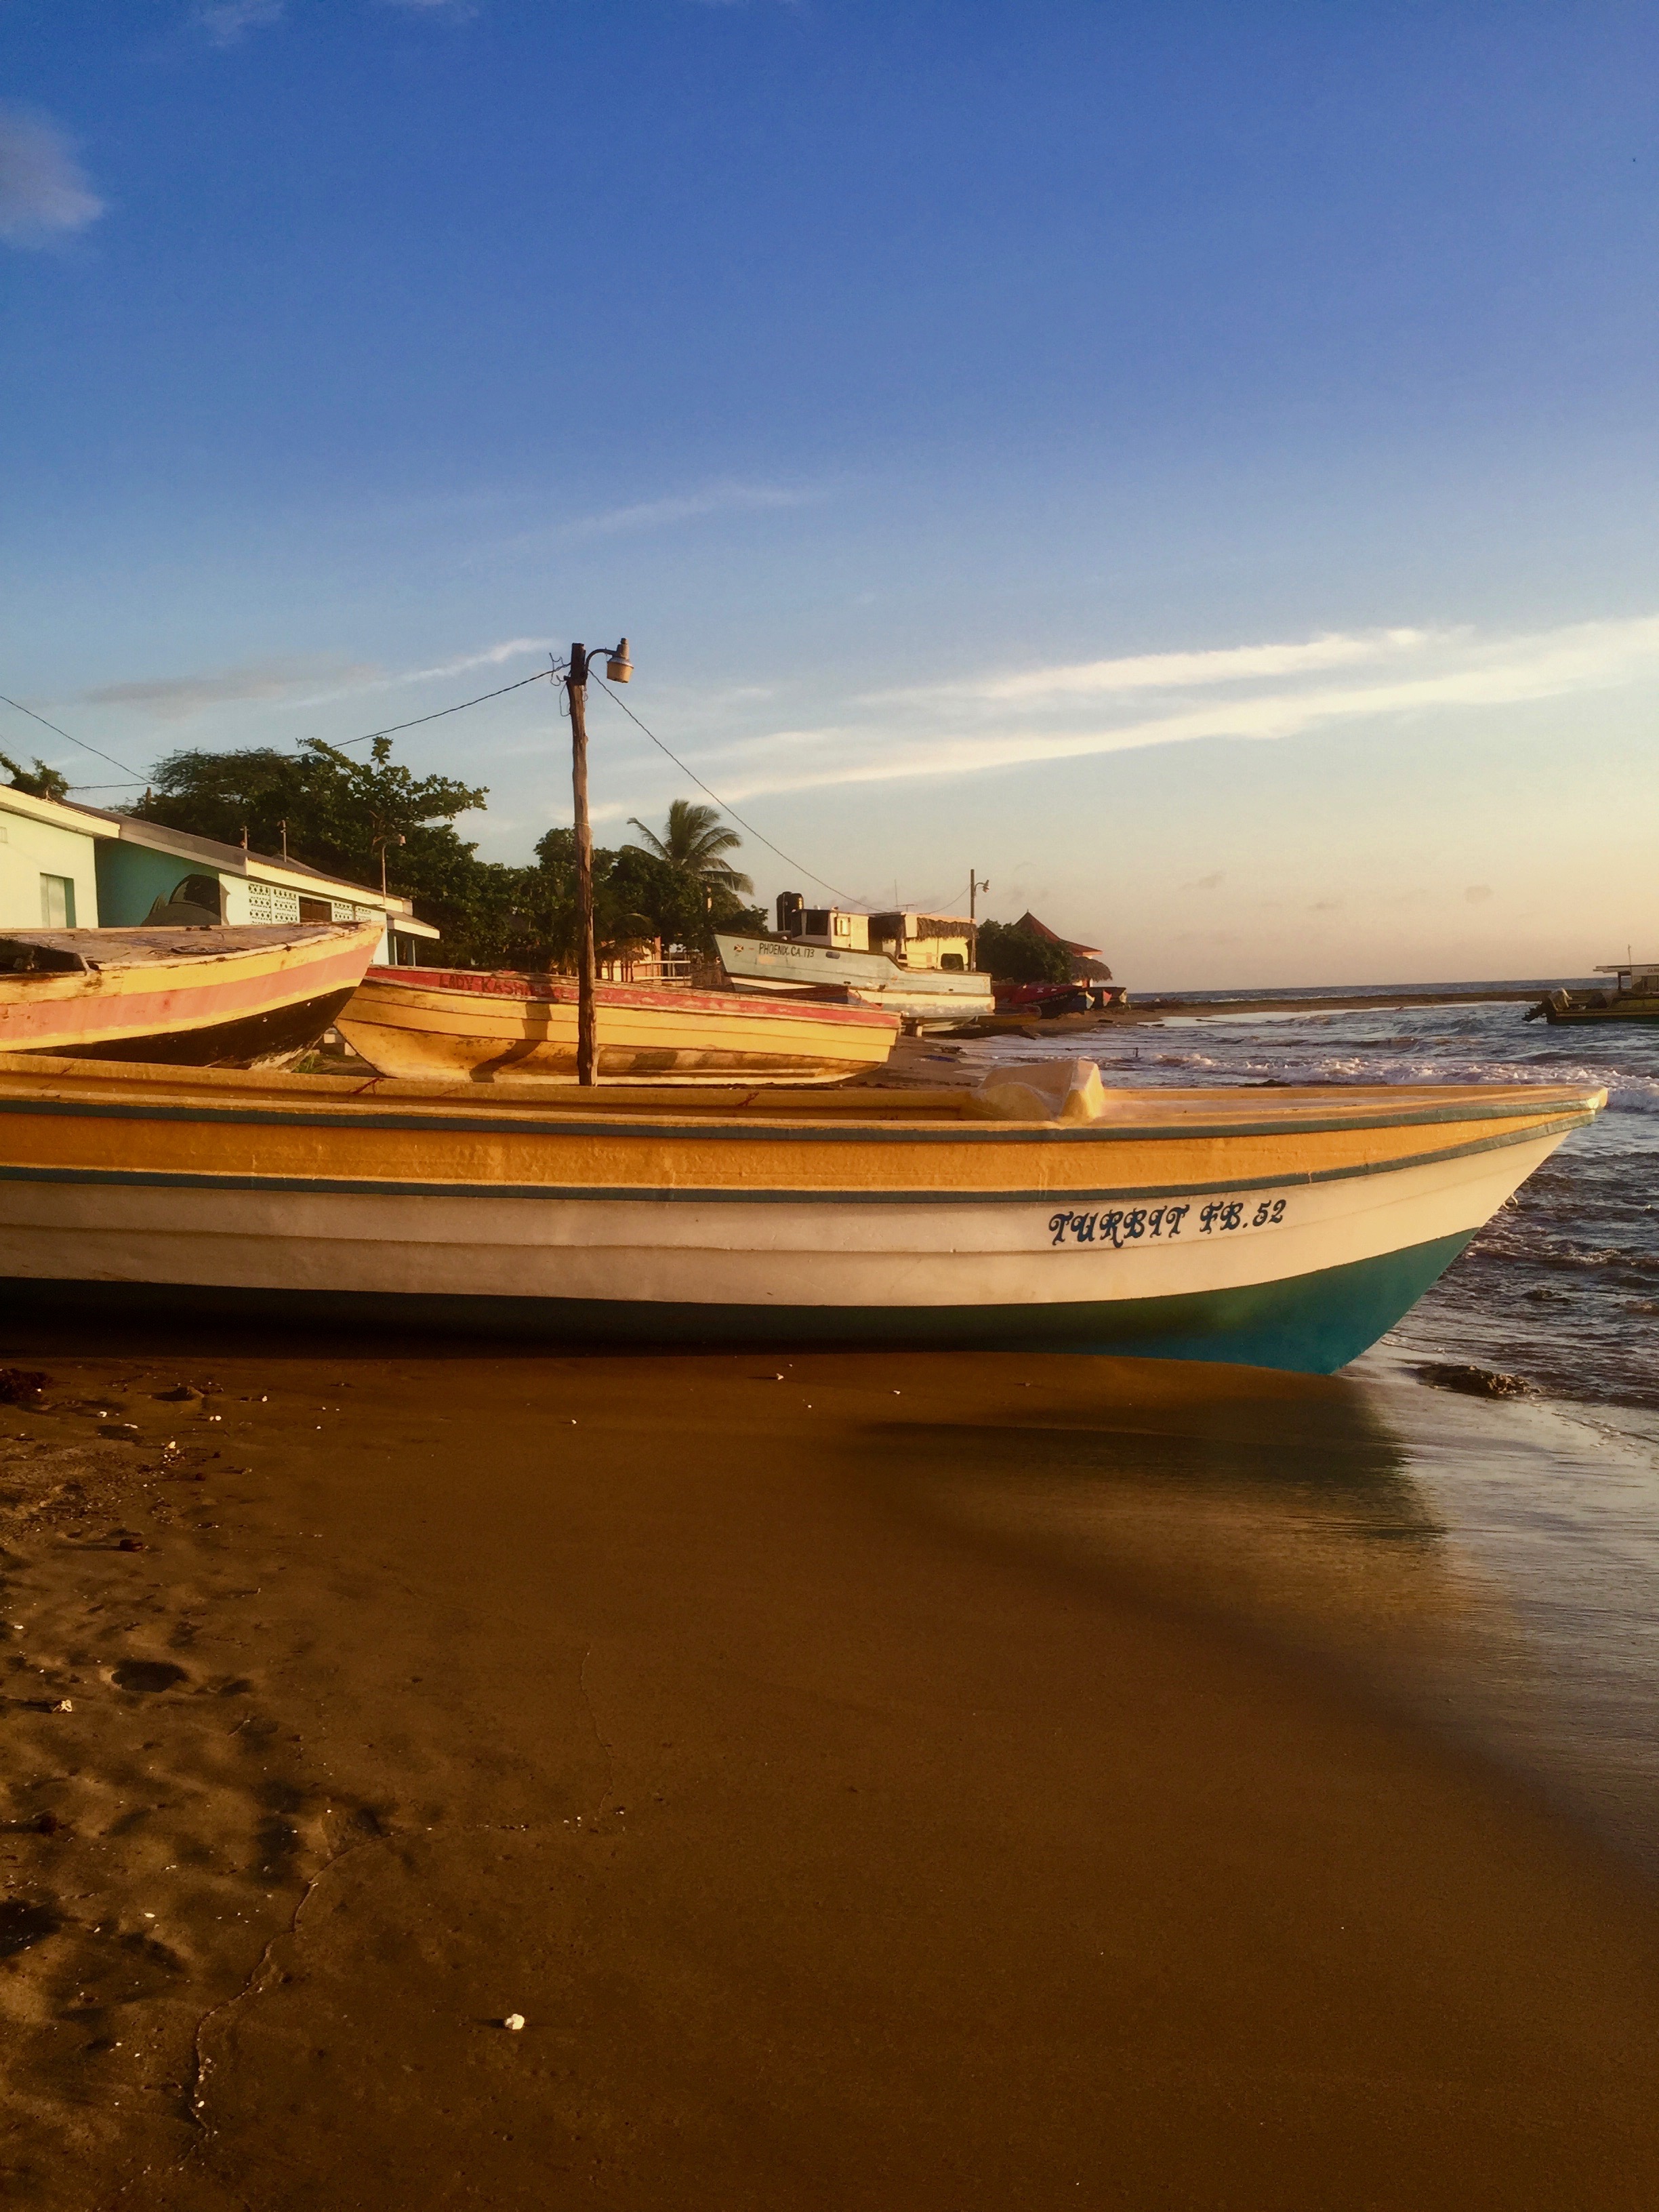 The boats at Calabash Bay, Treasure Beach, Jamaica